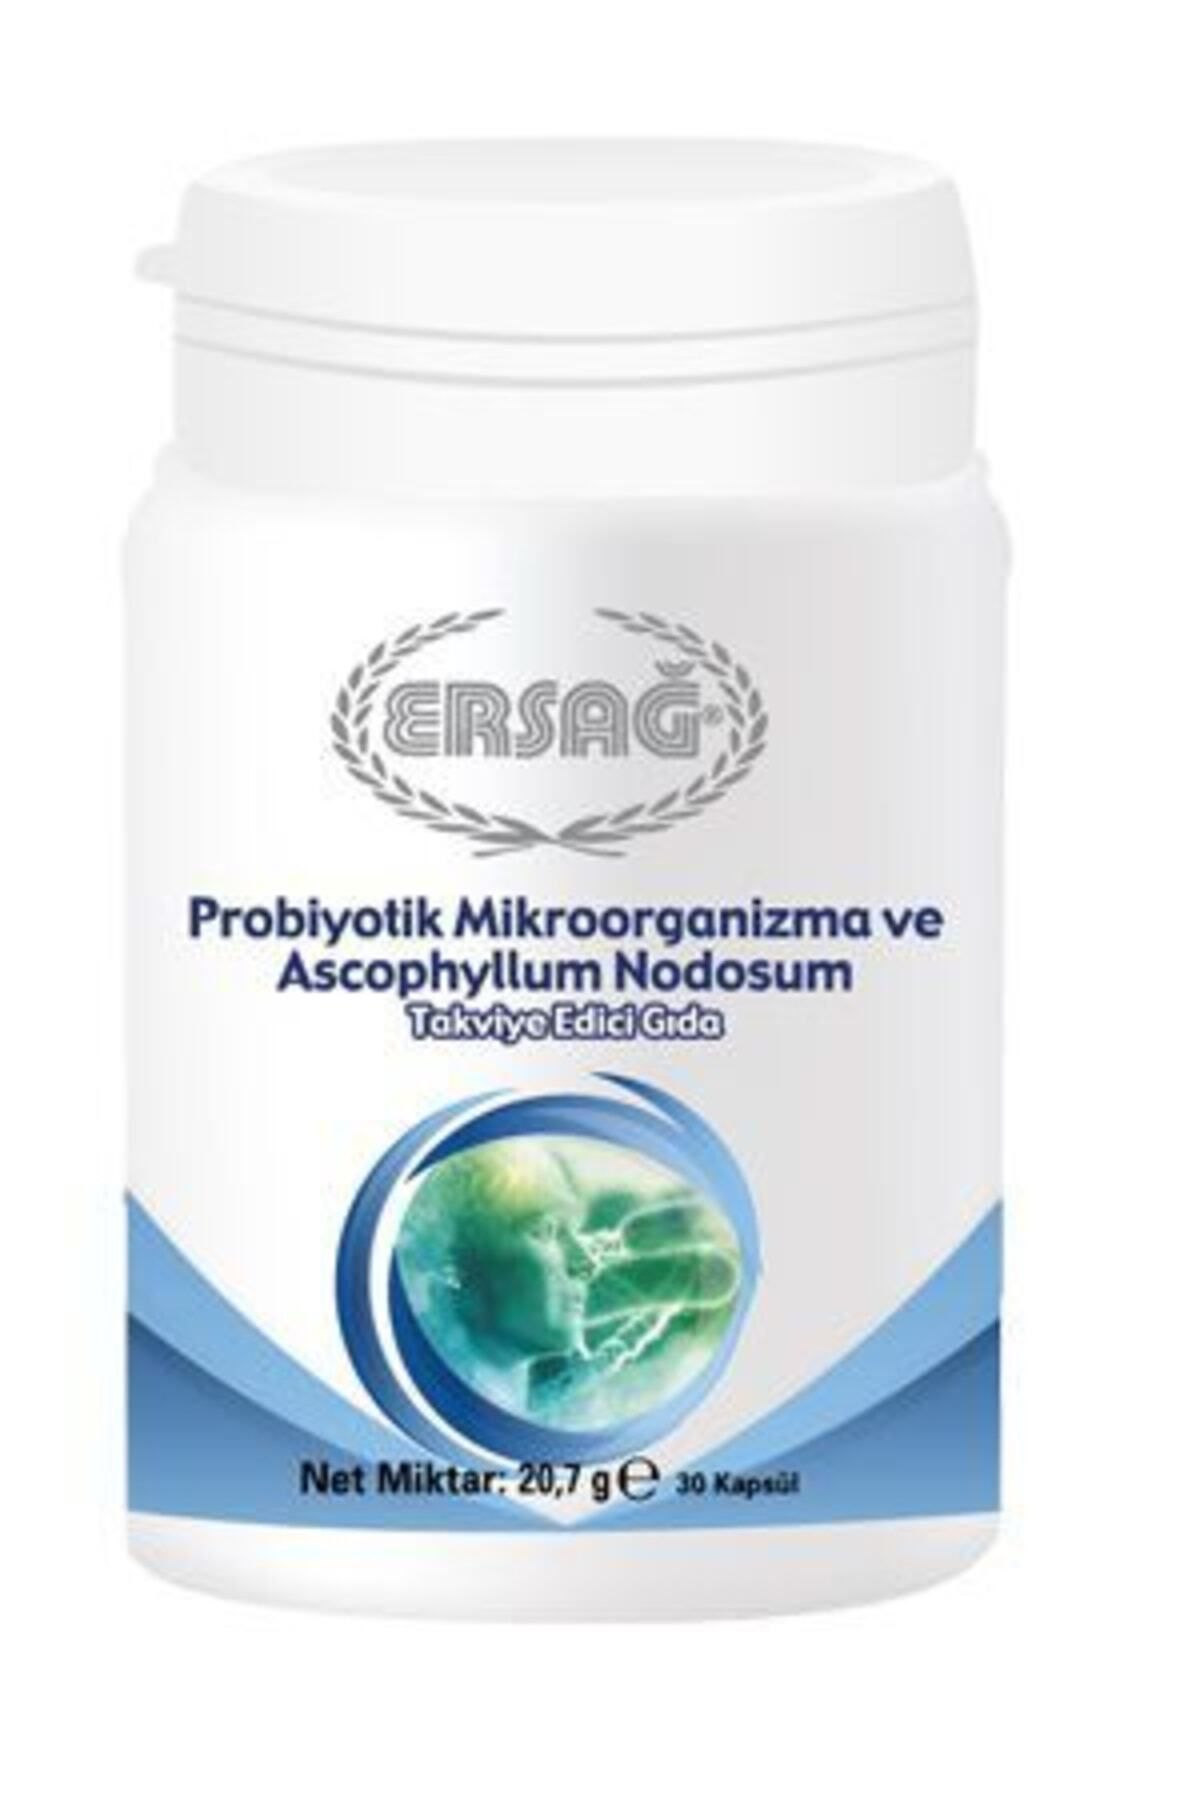 Ersağ Probiyotik Mikroorganizma ve Ascophyllum Nodosum 30 (kapsül Takviye Edici Gıda)